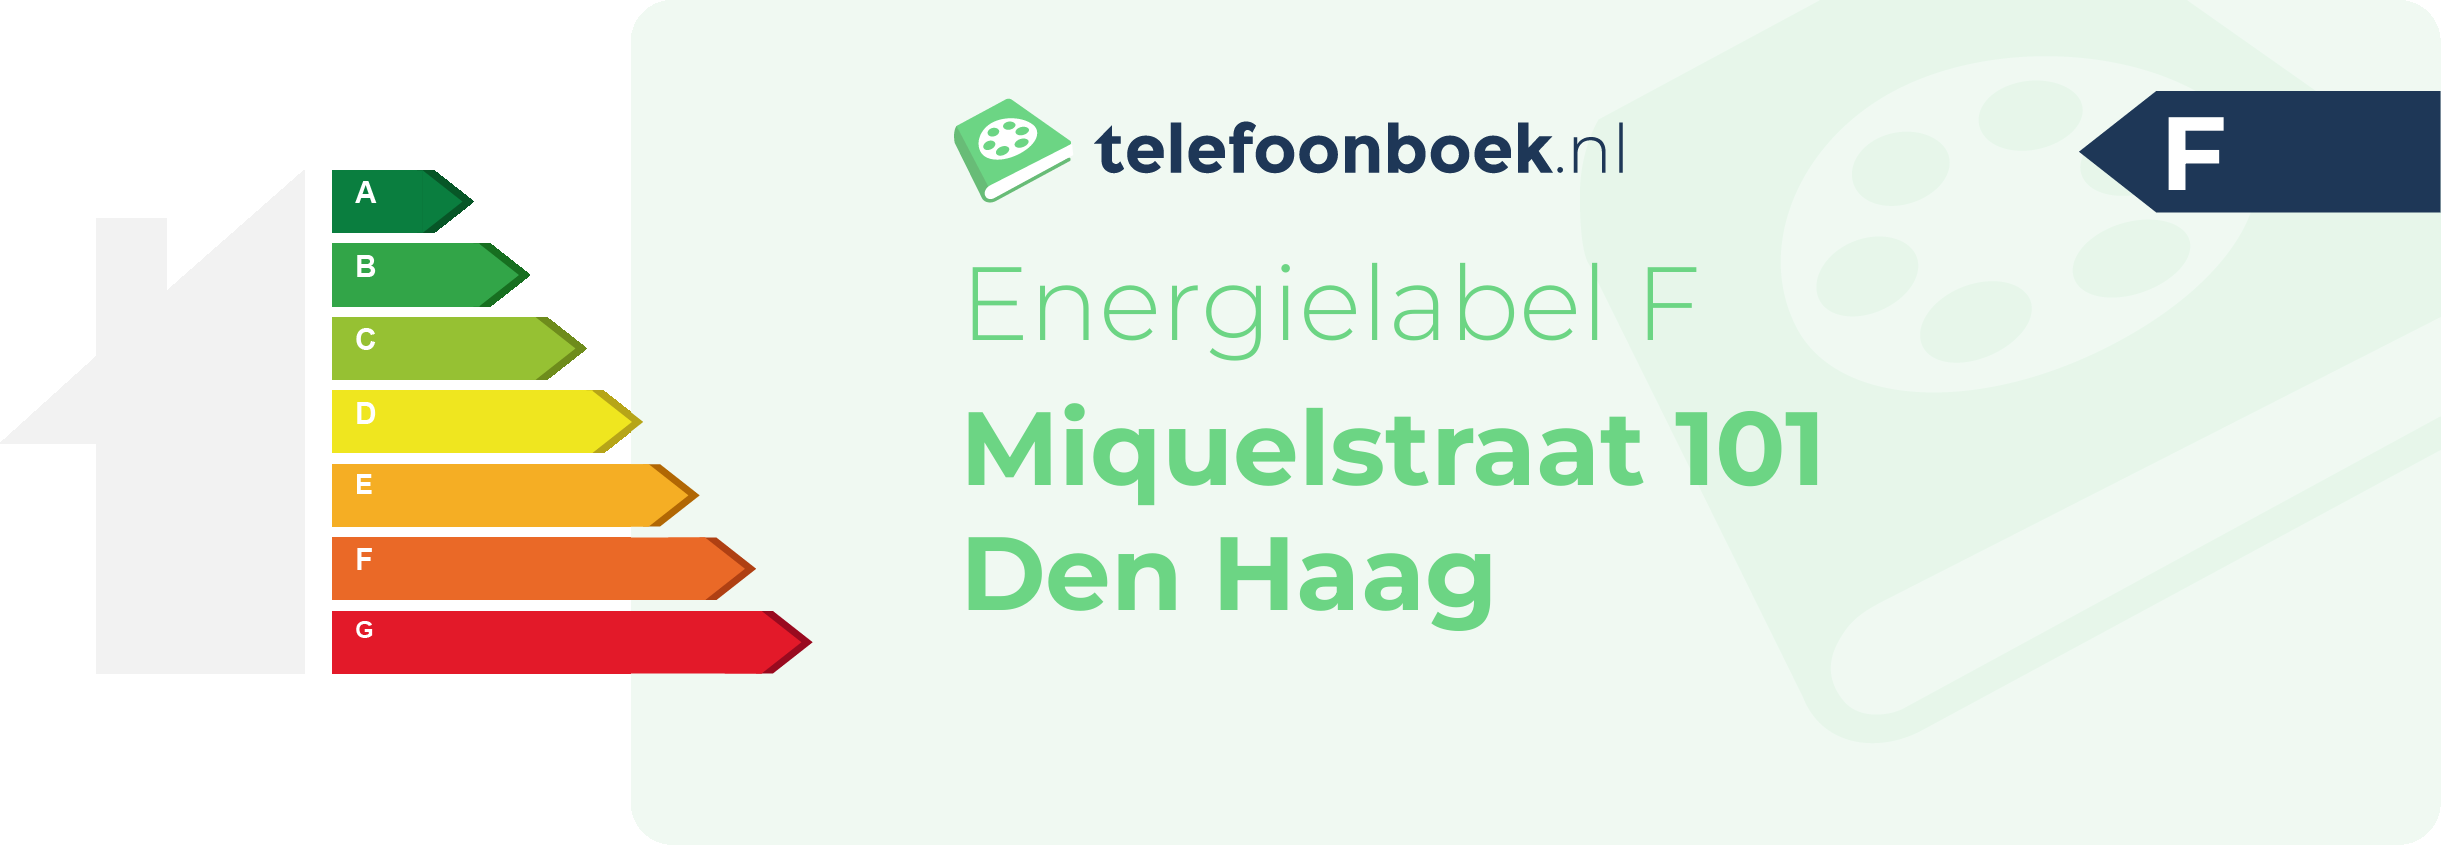 Energielabel Miquelstraat 101 Den Haag